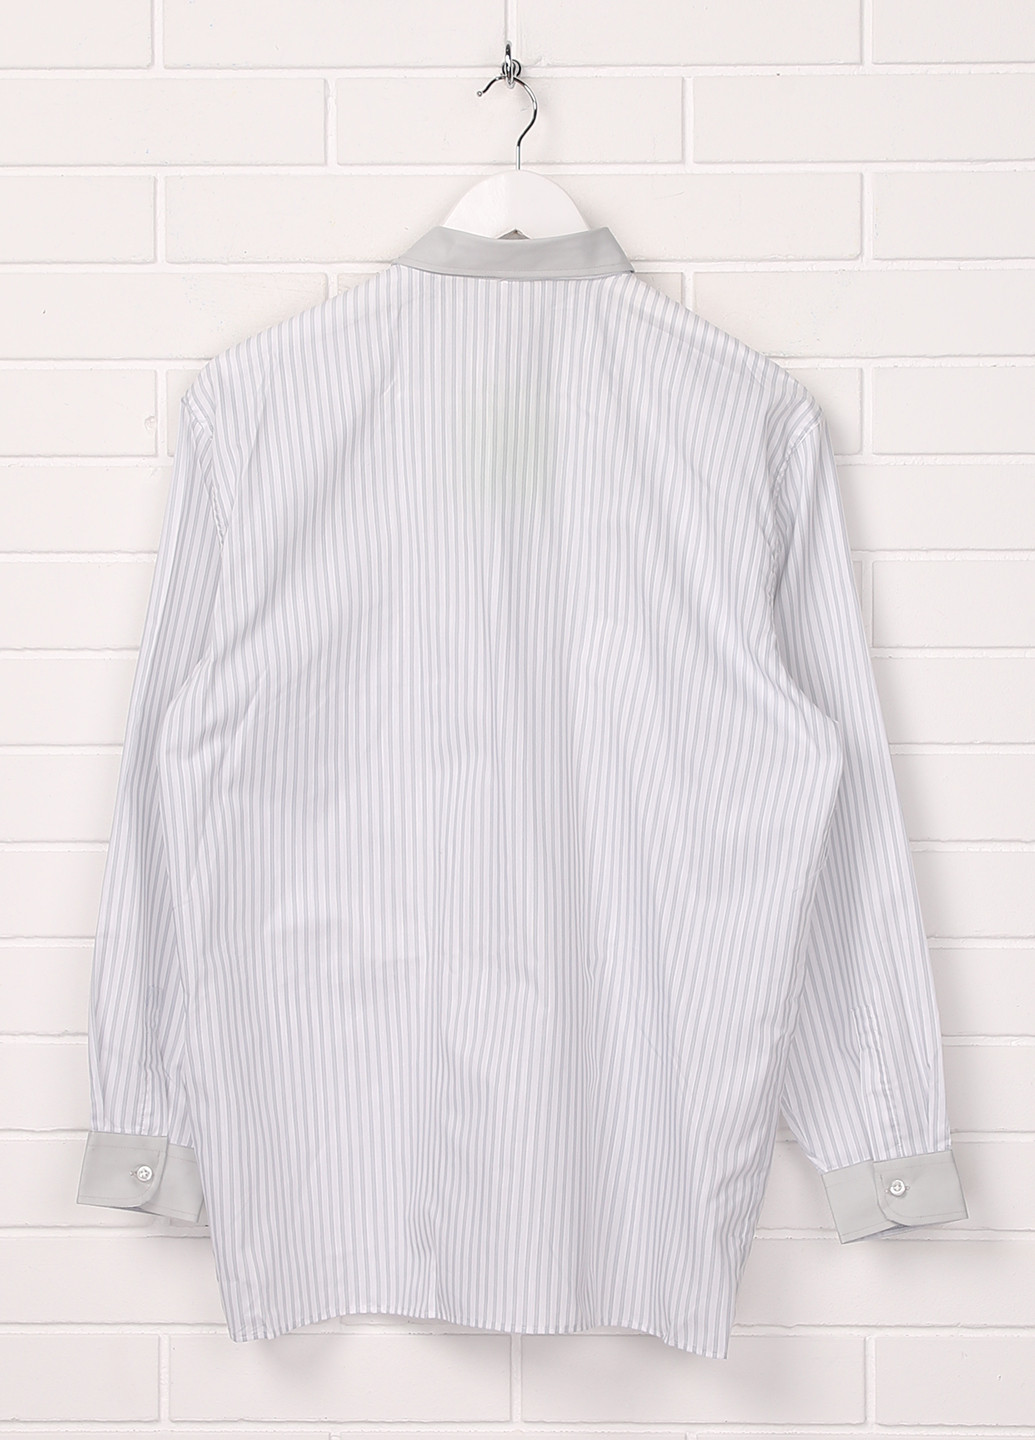 Белая классическая рубашка в полоску Malip с длинным рукавом